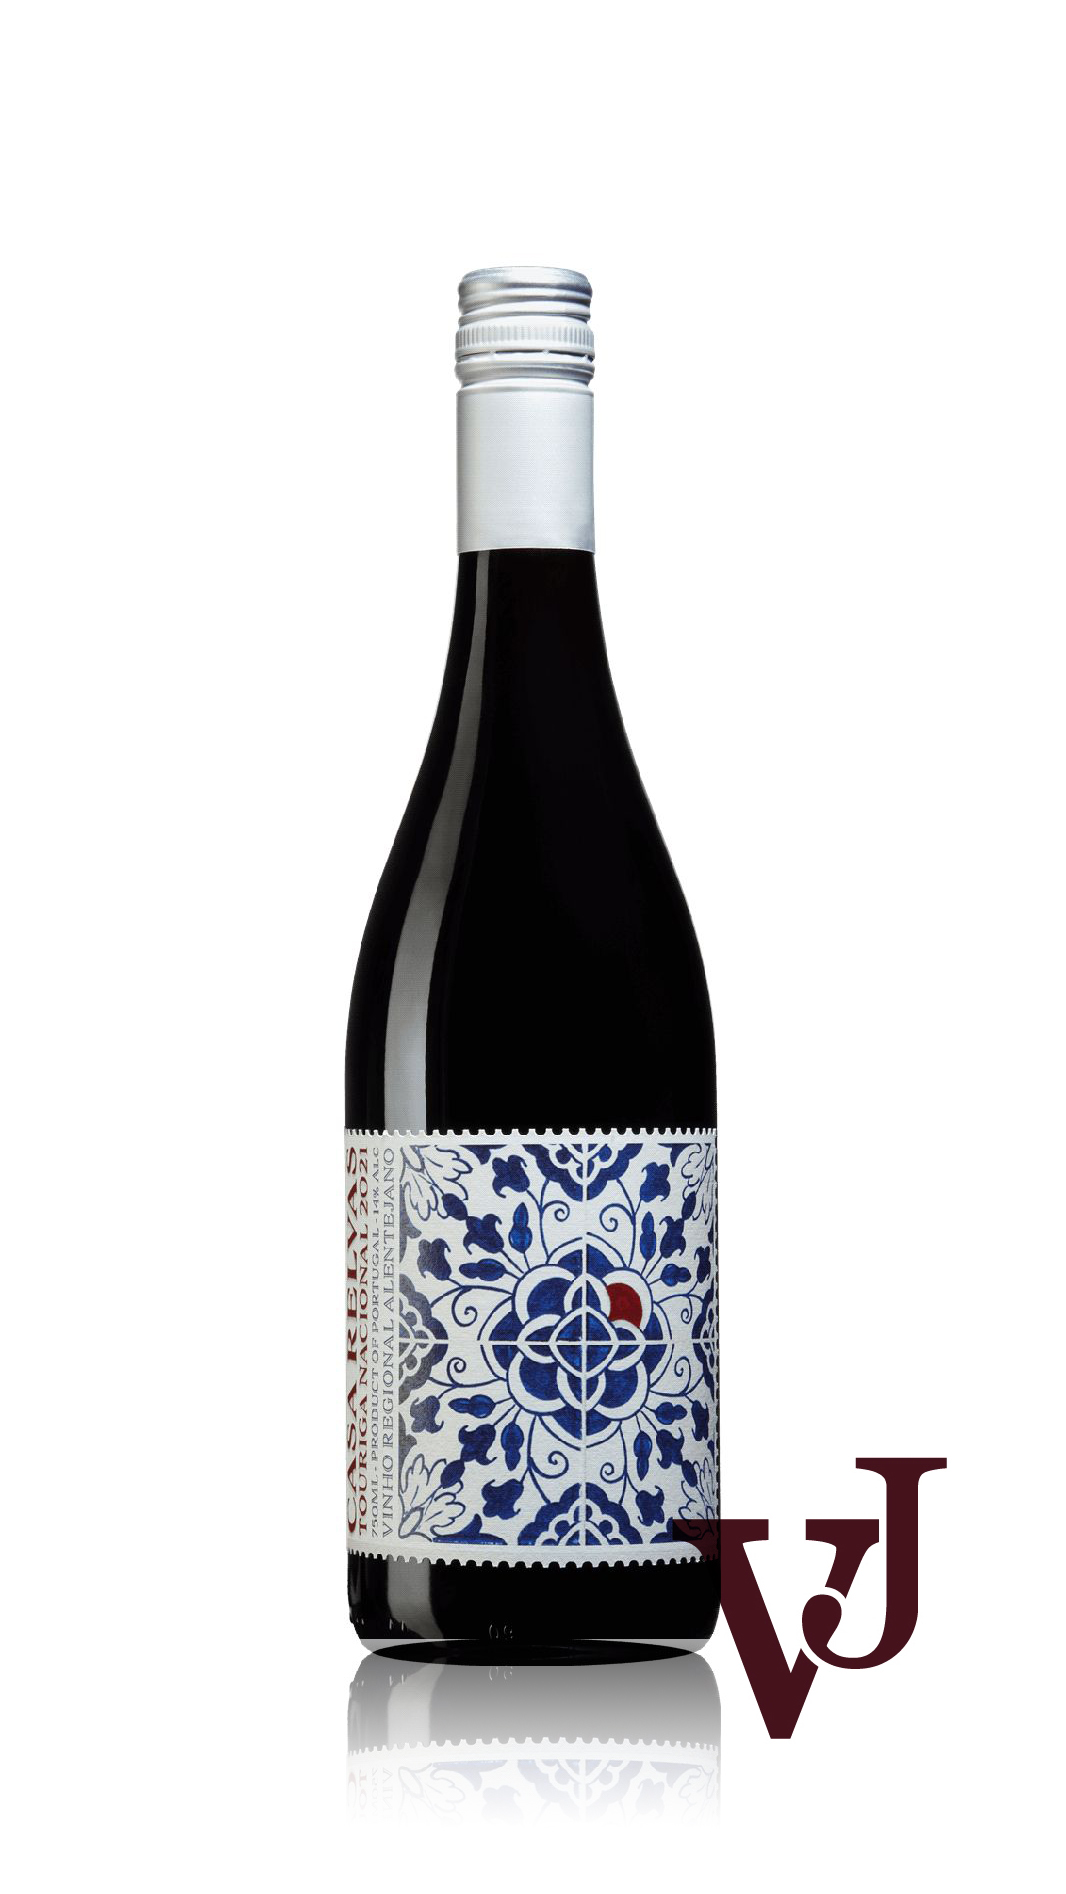 Rött Vin - Casa Relvas artikel nummer 280901 från producenten Casa Relvas från området Portugal